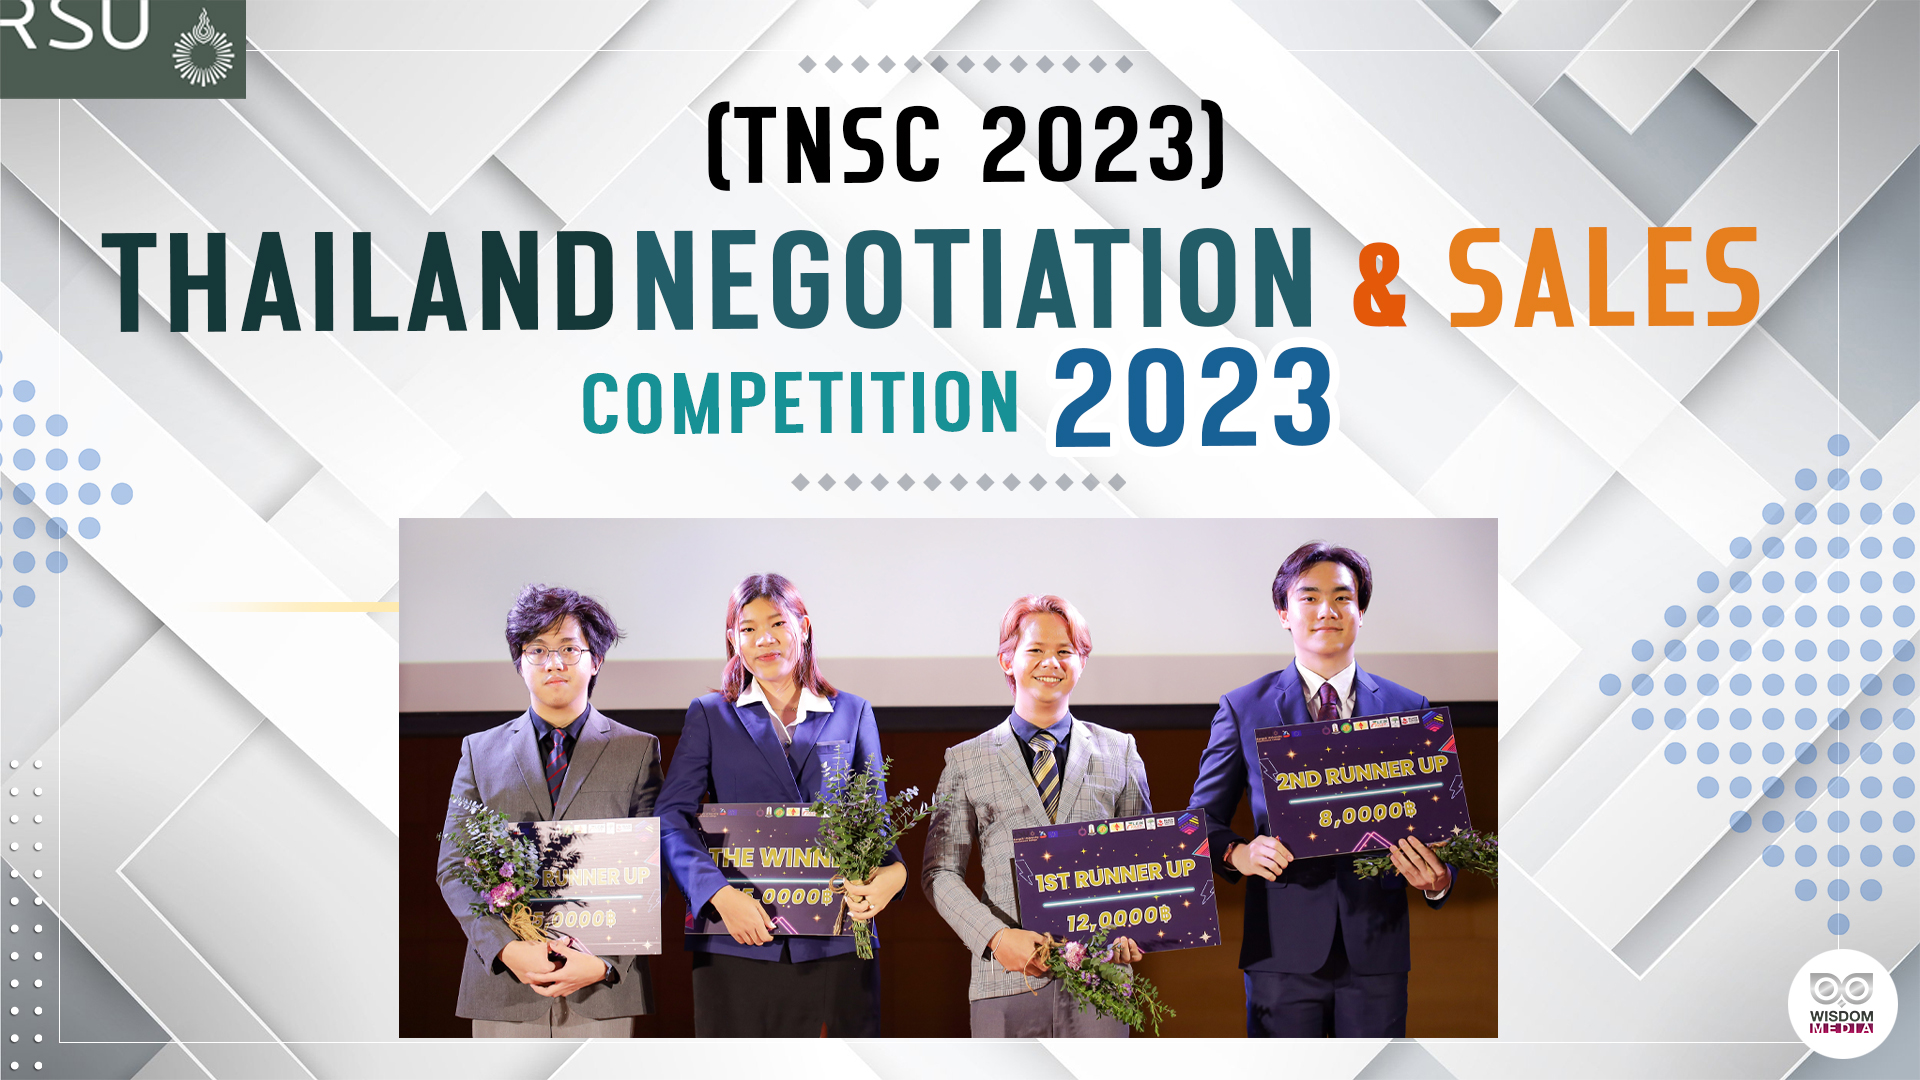 ม.รังสิต เป็นเจ้าภาพจัดการแข่งขัน THAILAND NEGOTIATION & SALES COMPETITION 2023 (TNSC 2023)